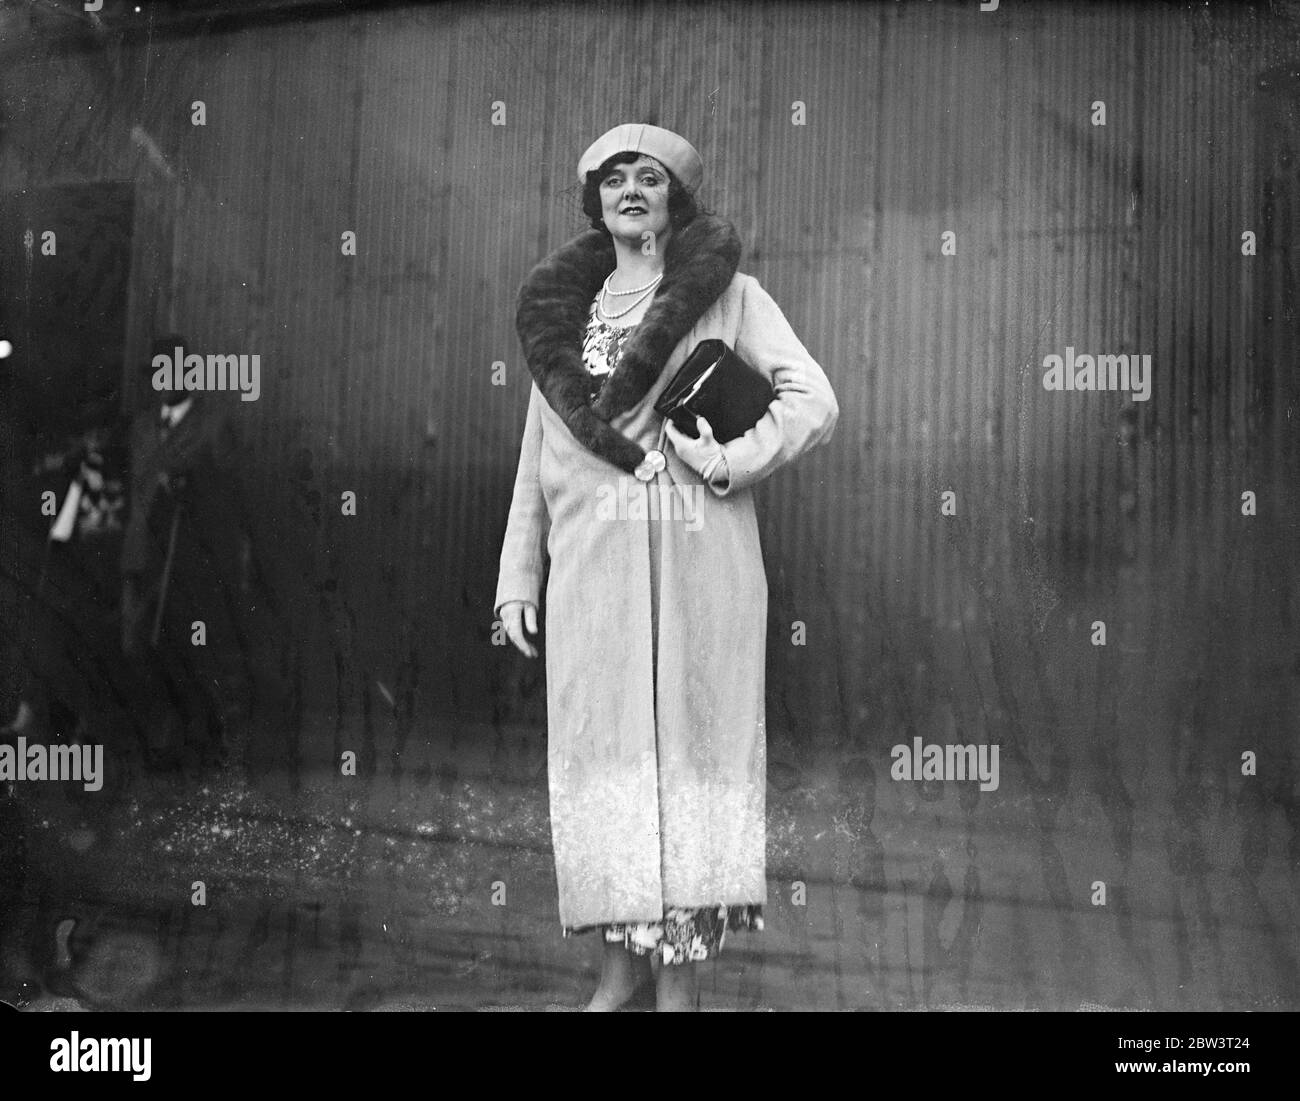 Opera Singer arrive de New York . Evelyn Gardener , la chanteuse d'opéra australienne , est arrivée à Southampton lors des séances photos : Evelyn Gardner à l'arrivée à Southampton . 24 juin 1936 Banque D'Images